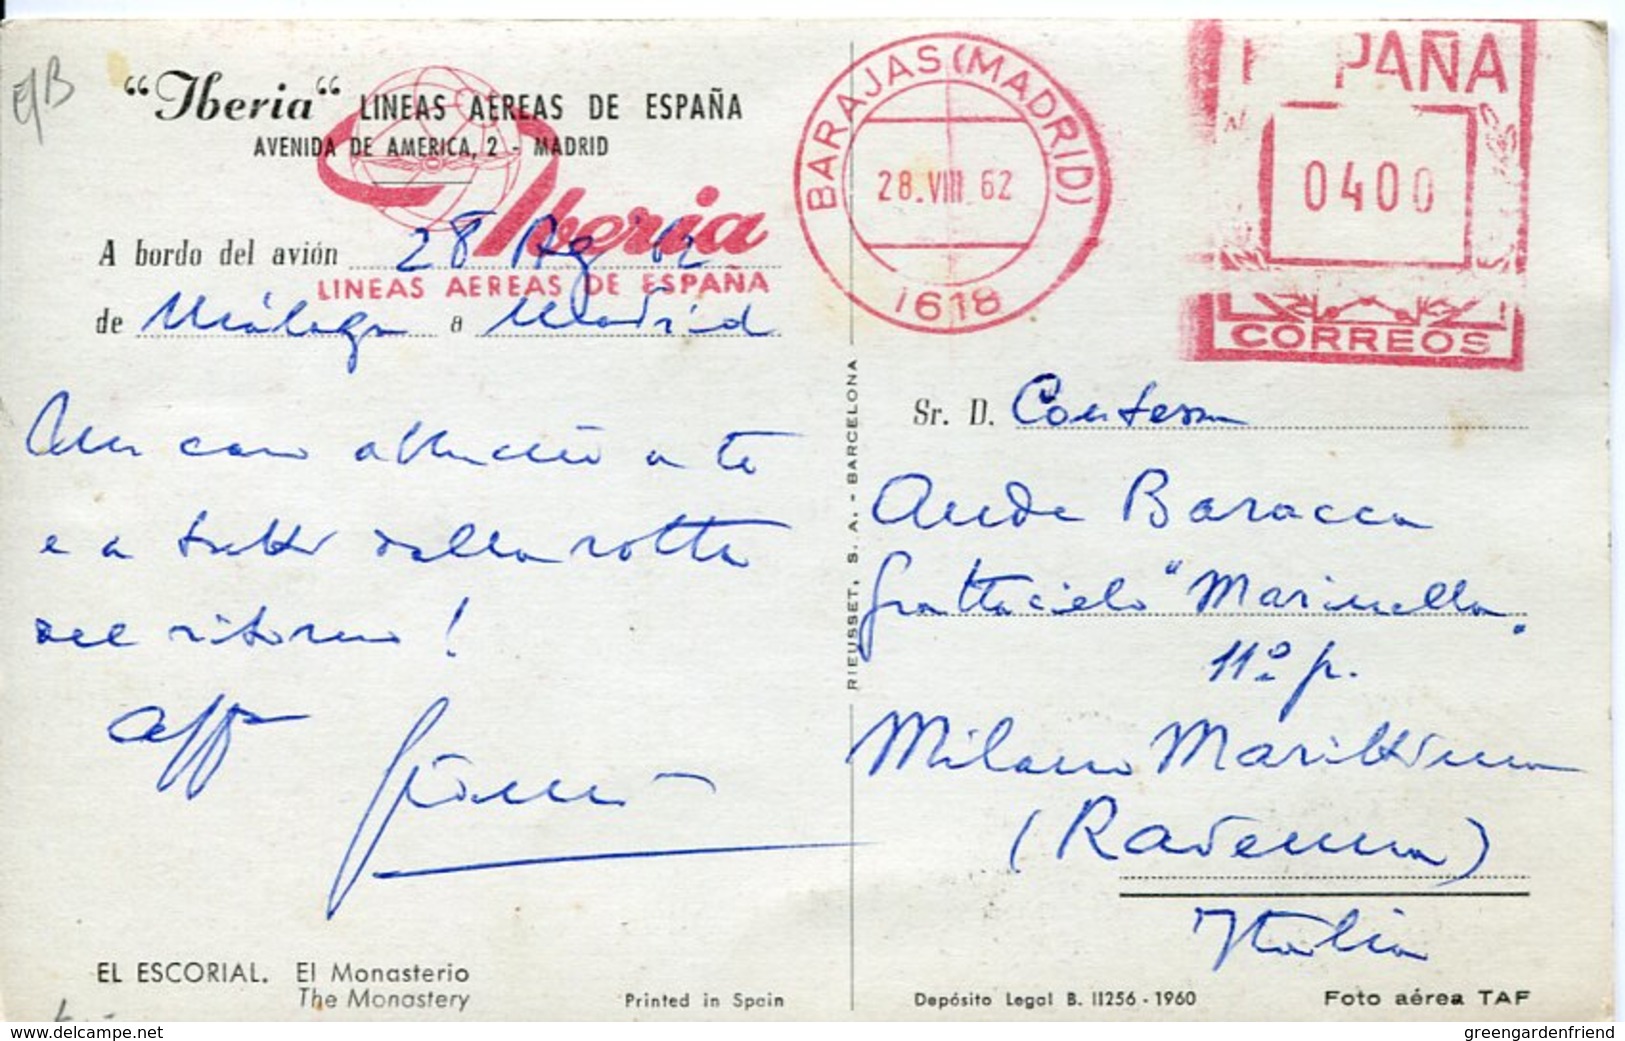 45306 Spain, Red Meter Freistempel Ema,1962 Madrid Barajas Airport Iberia Limeas Aerea De Espana,card Circuled - Máquinas Franqueo (EMA)